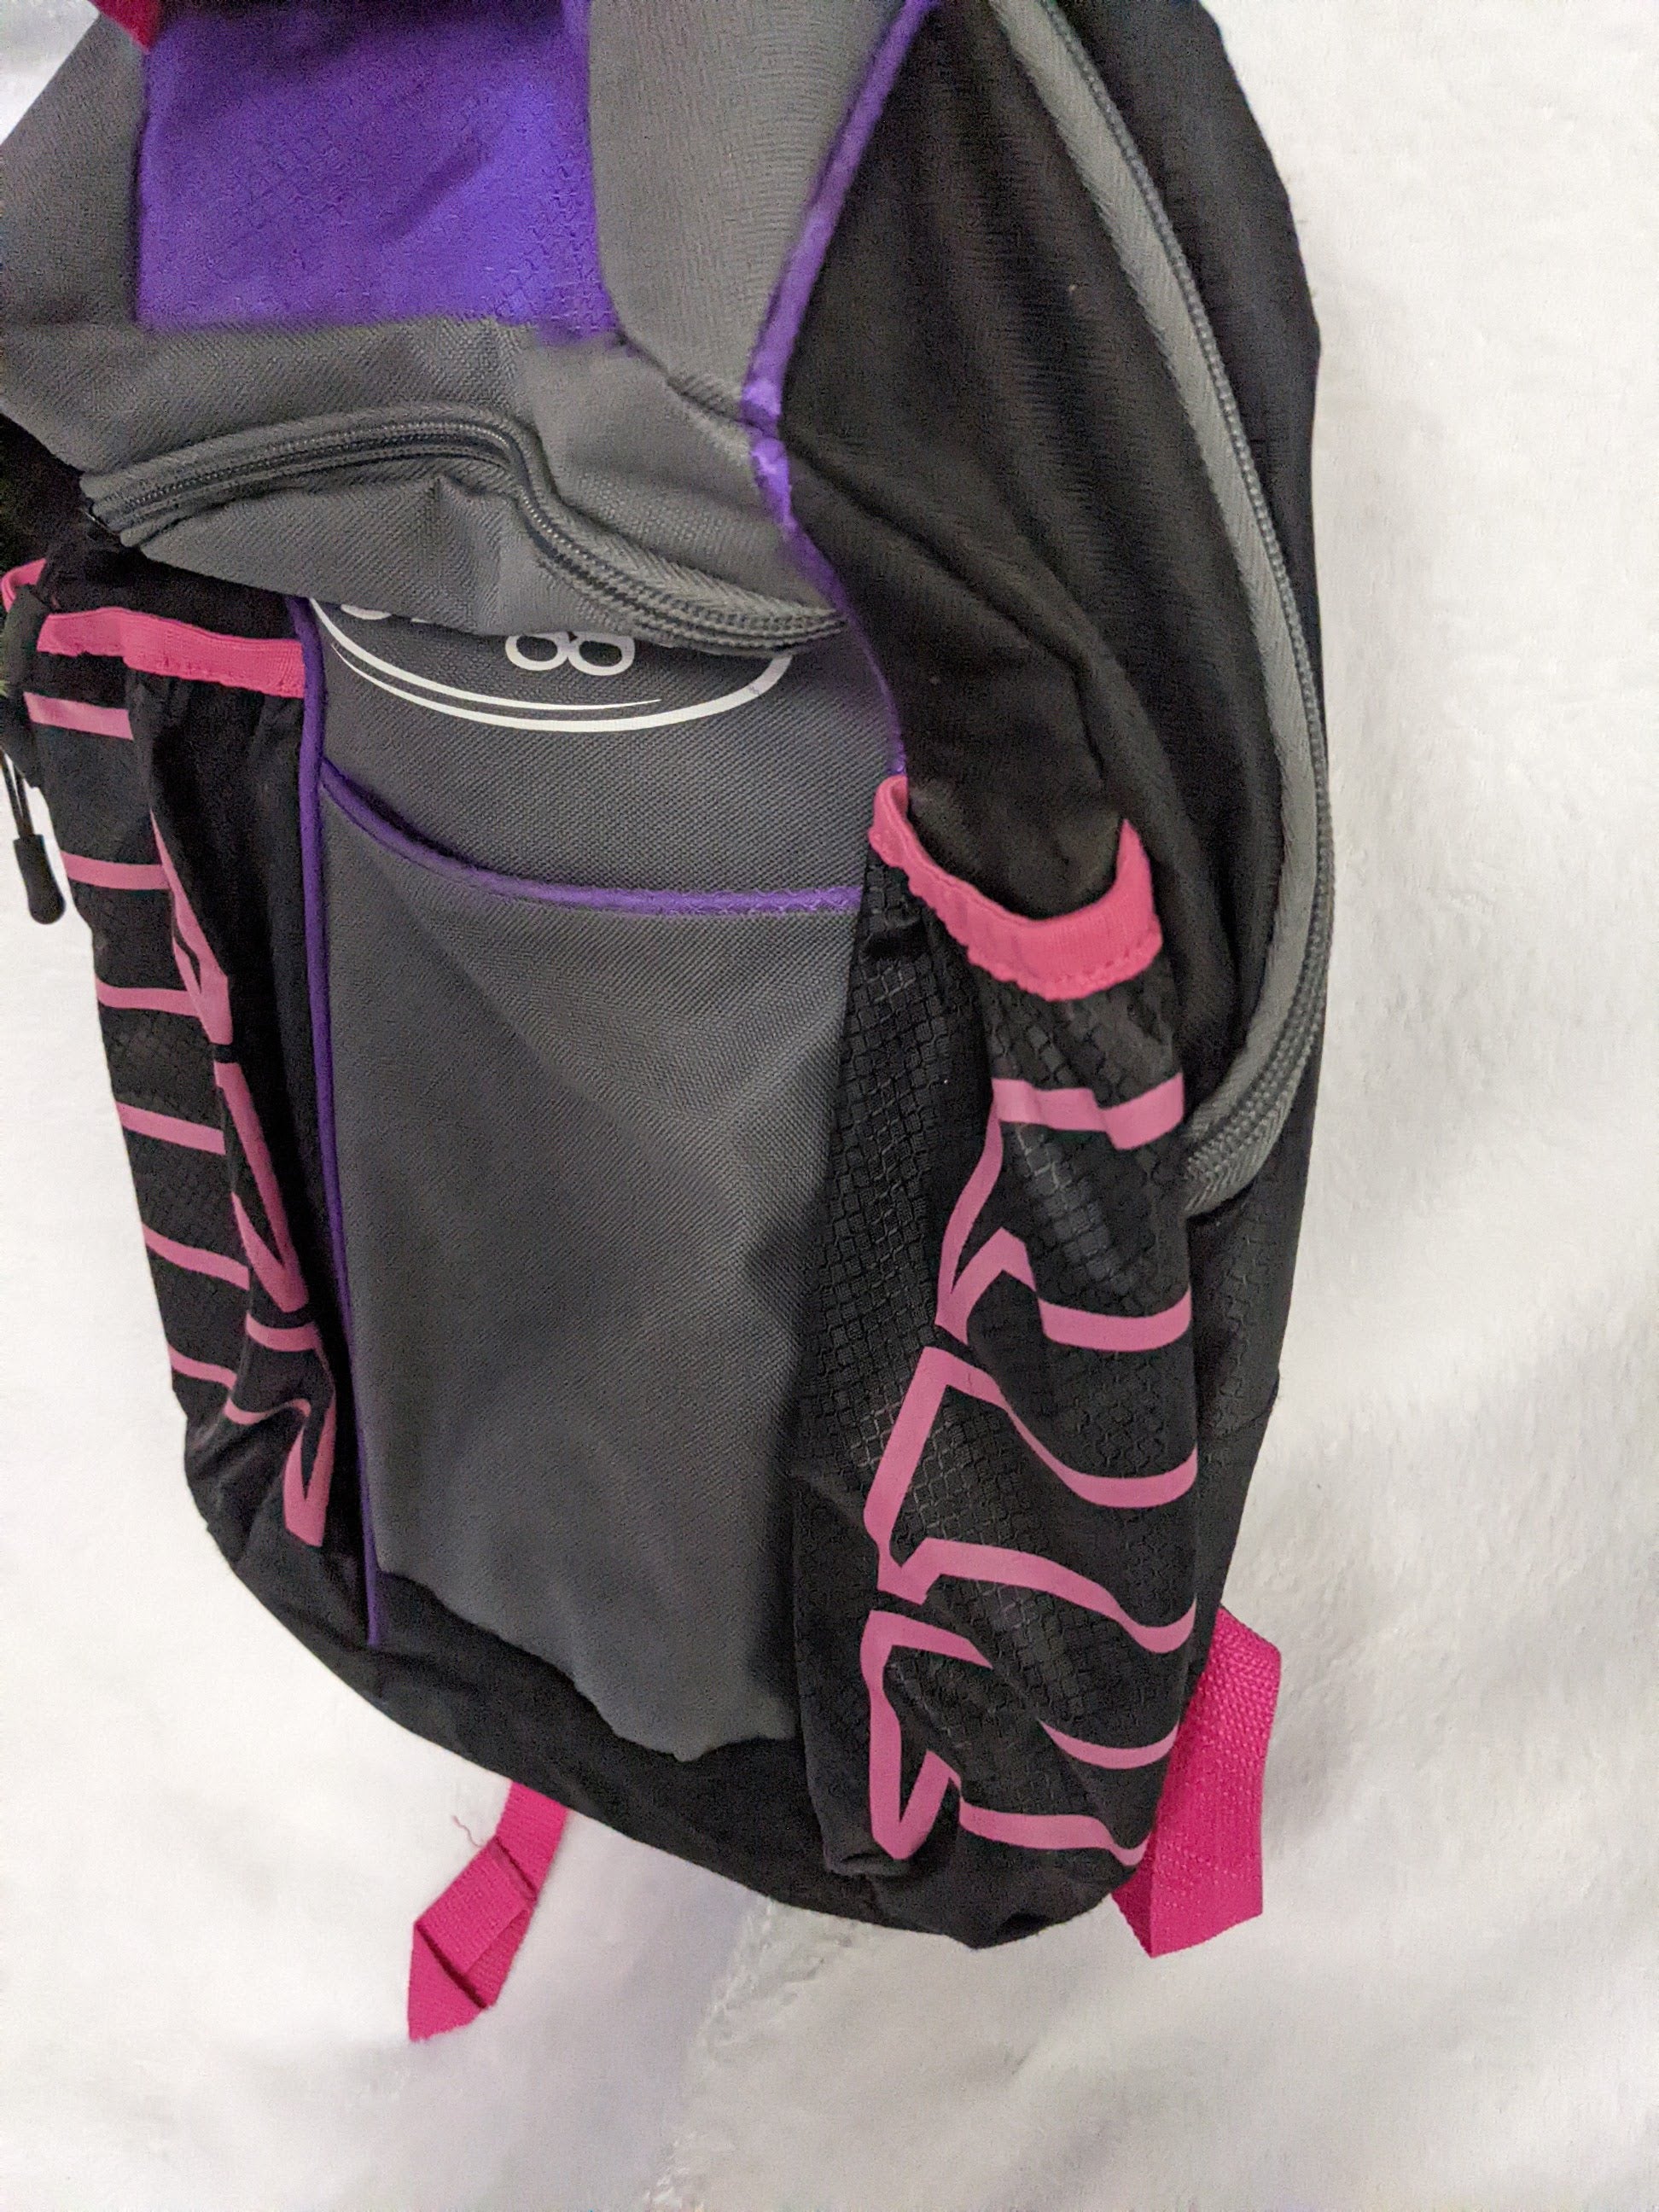 Purple Louisville Slugger Backpack Softball Baseball Bag